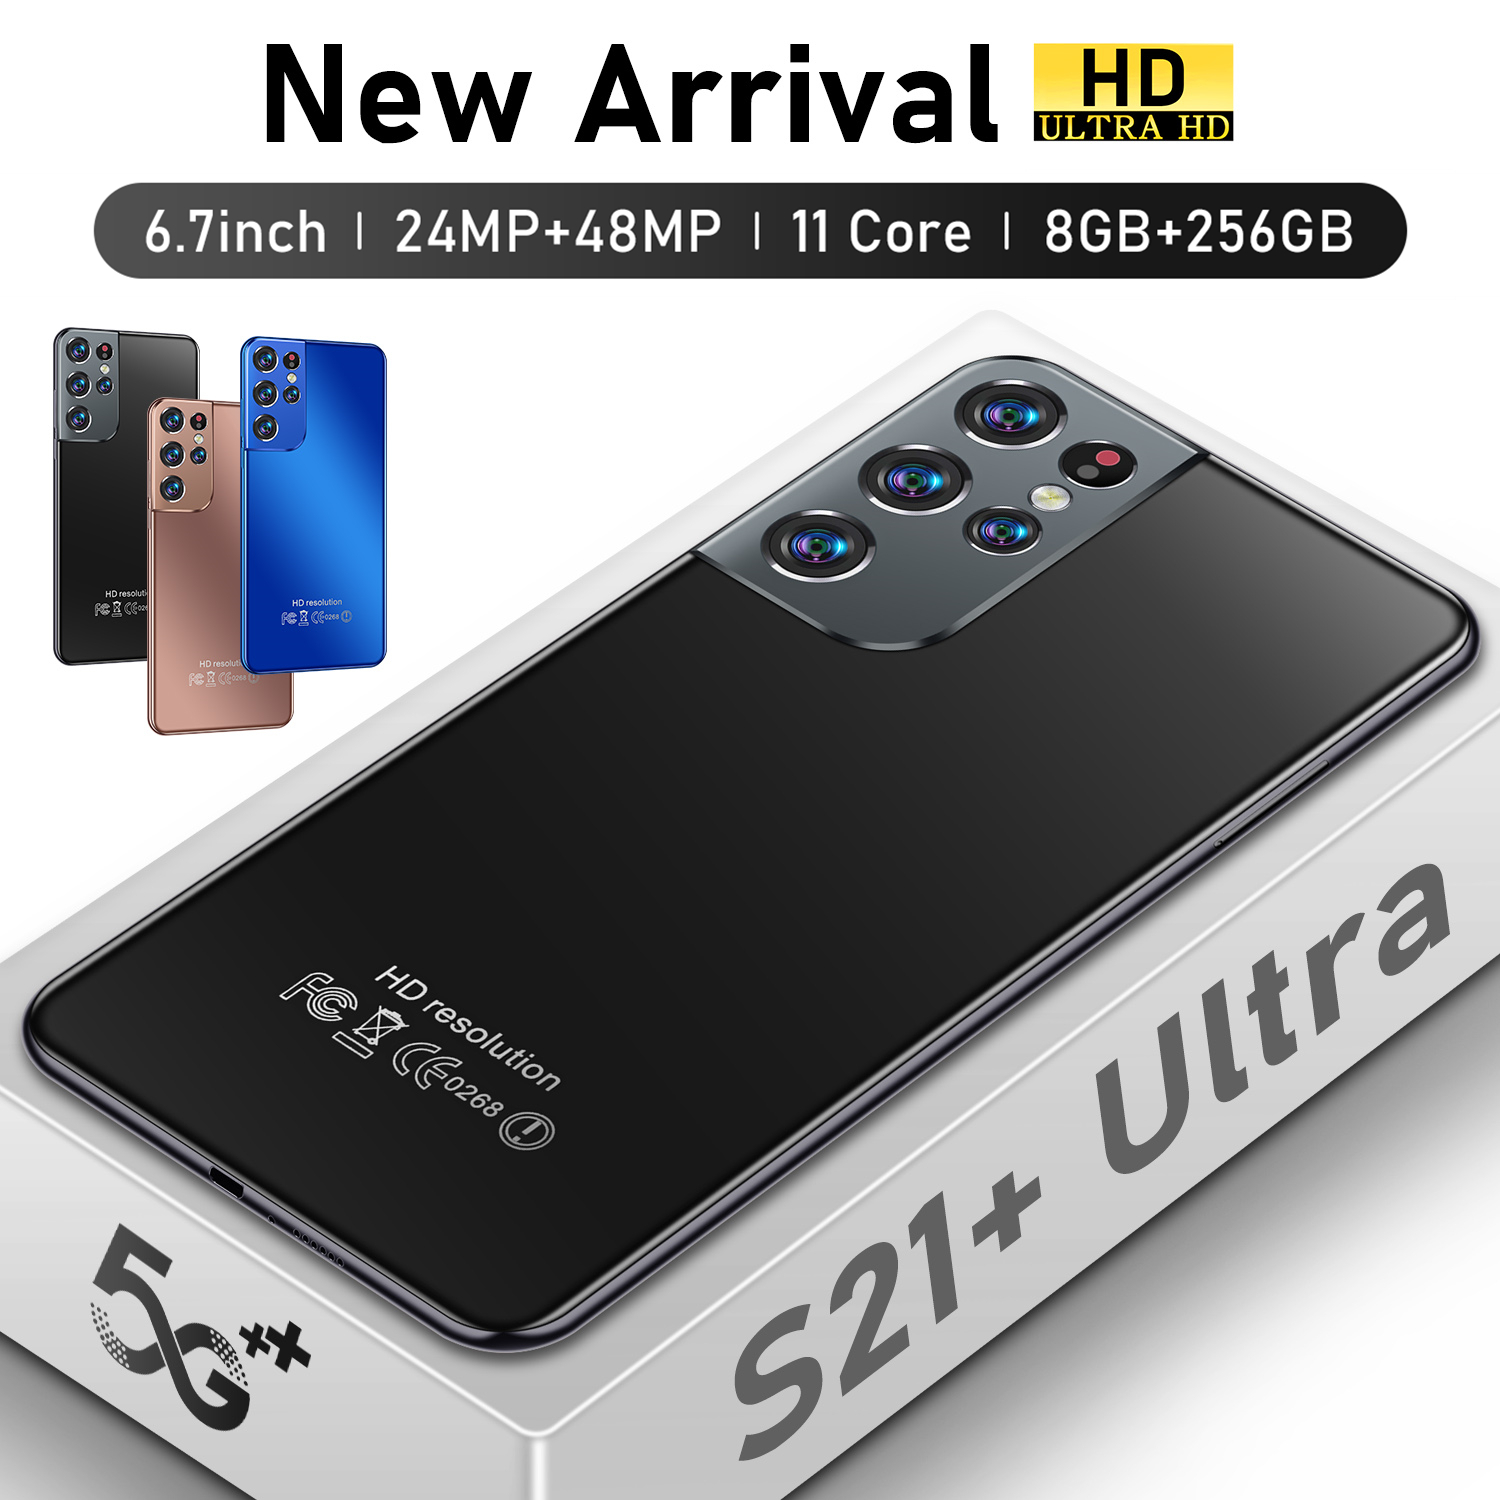 ​​เมณูภาษาไทย S21 Ultra 8GB RAM 256GB ROM กล้องหน้า 24MPกล้องหลัง 48MP บตเตอรี่ 6500mAh รองรับซิมการ์ดไทยทุกรุ่นส่งฟรีในไทยจัดส่งคู่ card dual standby สาม